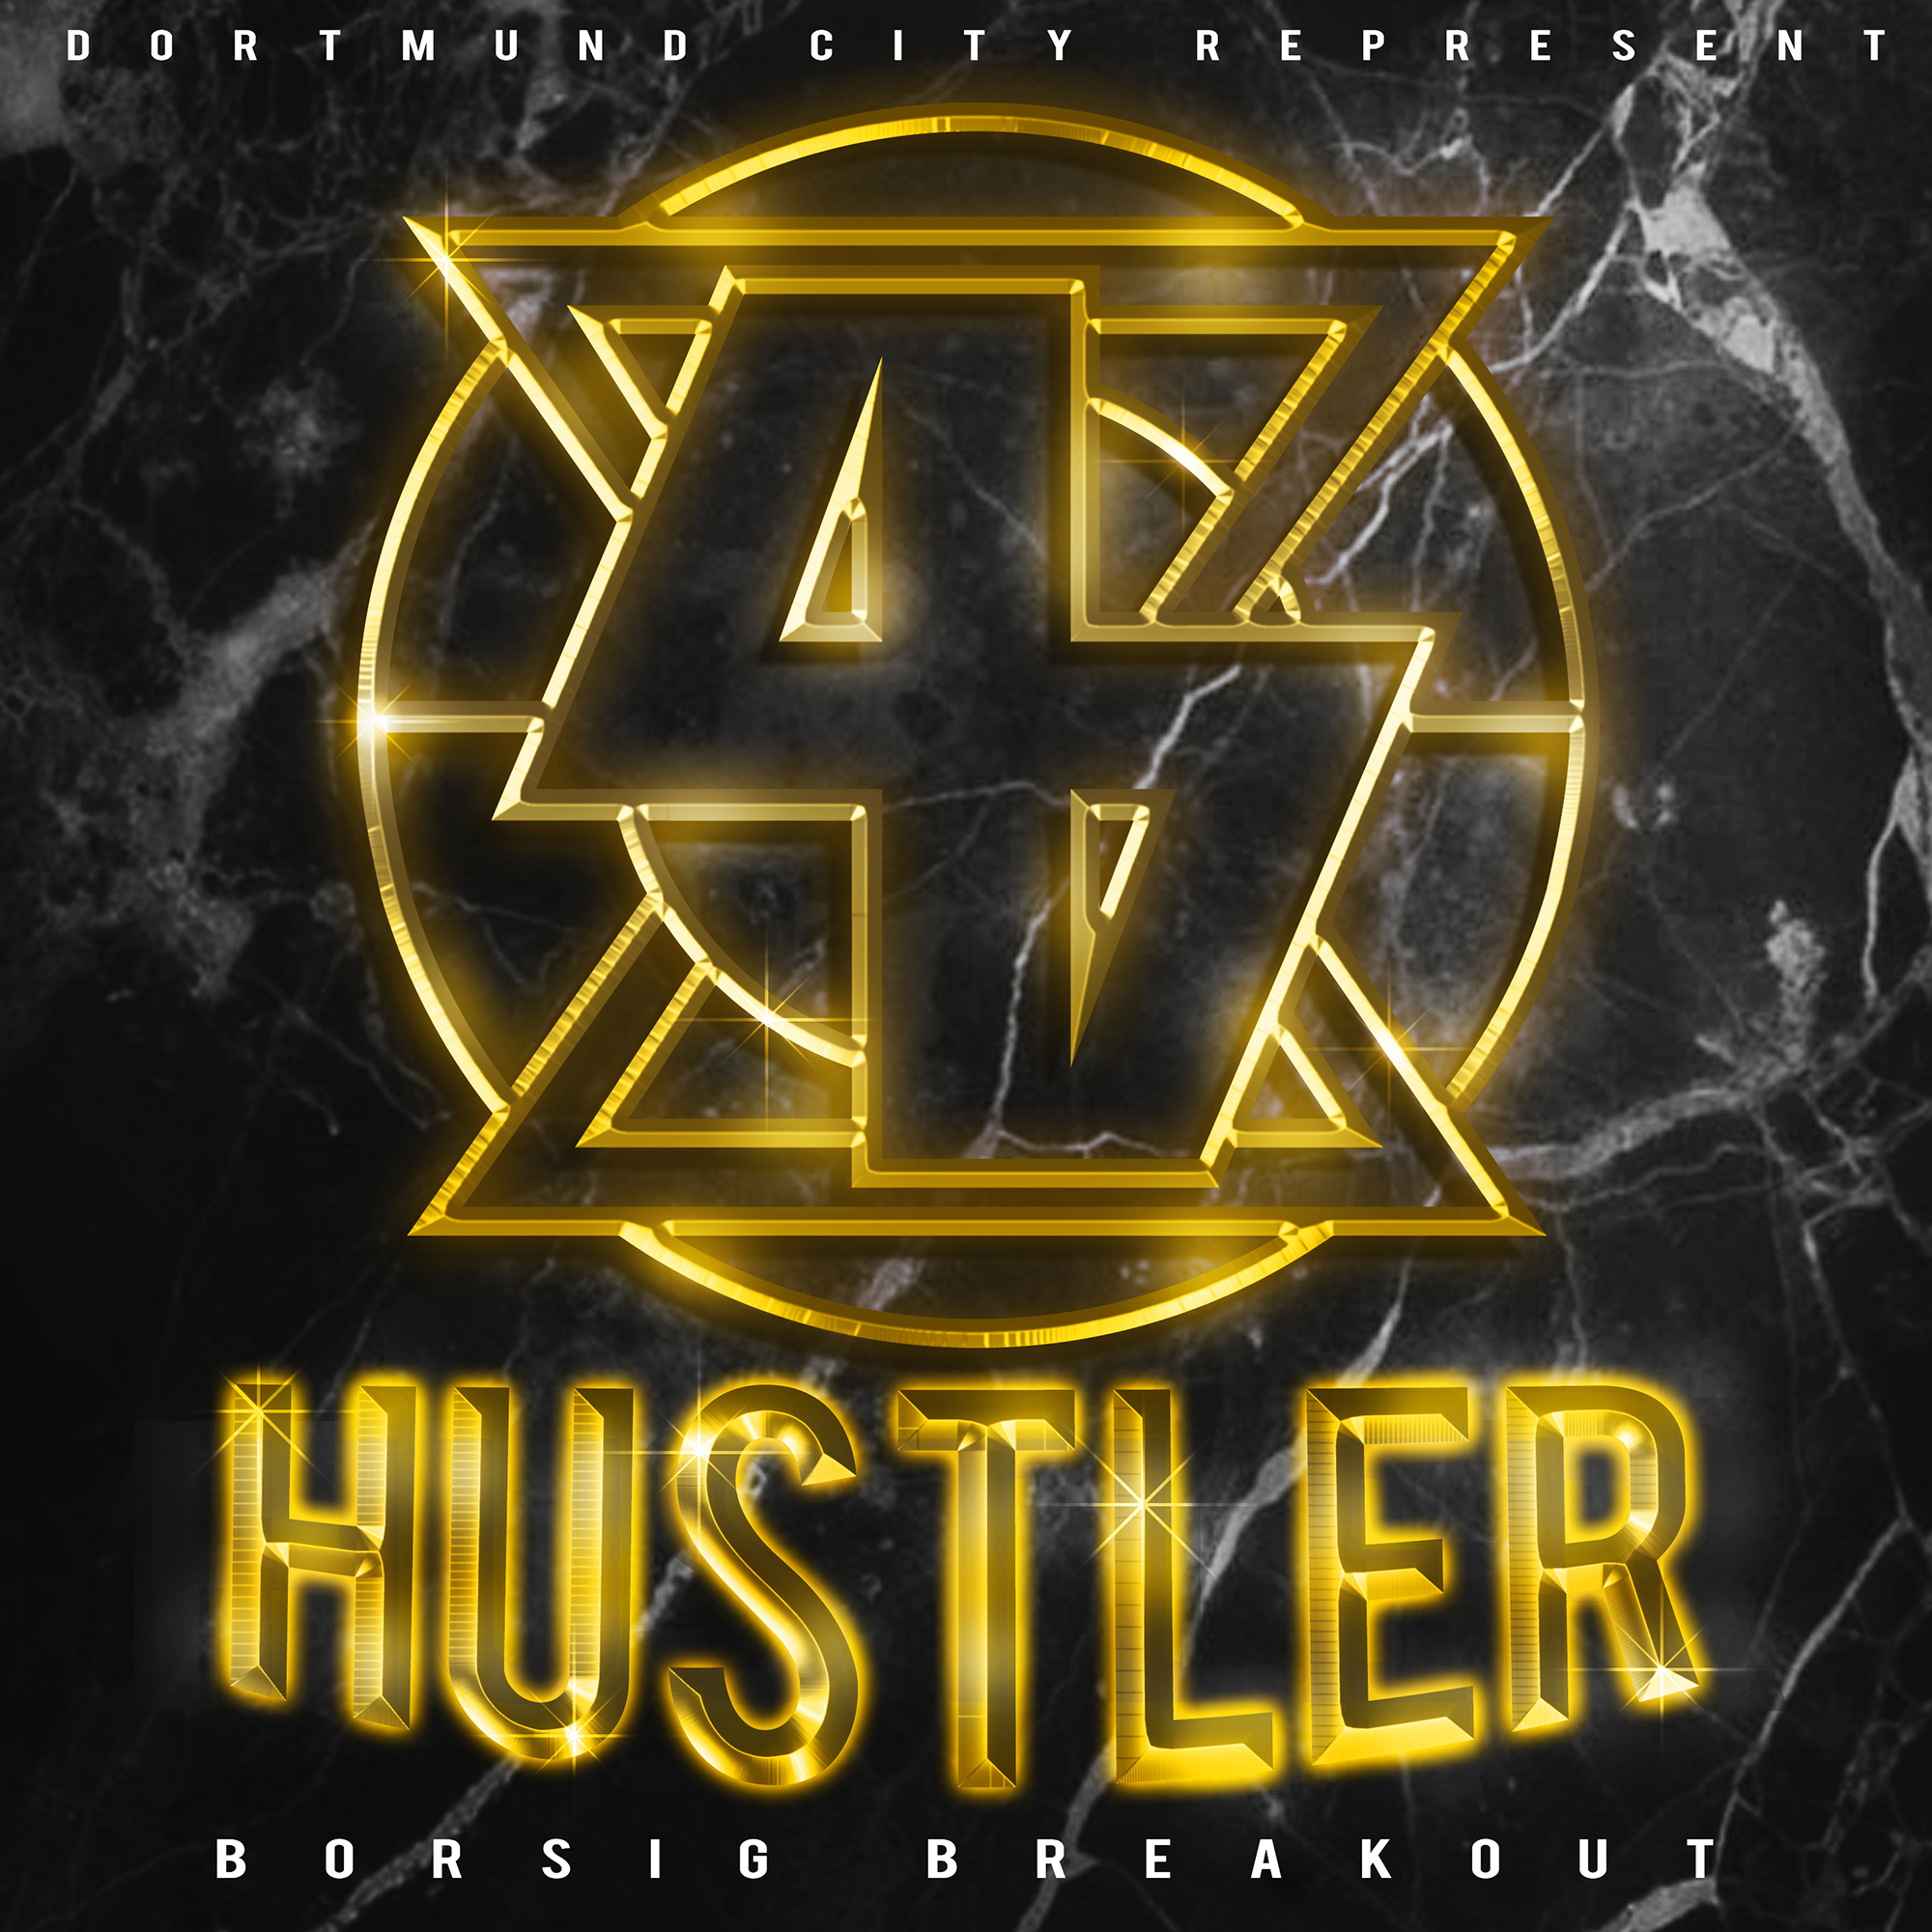 44 Hustler - Borsig Breakout